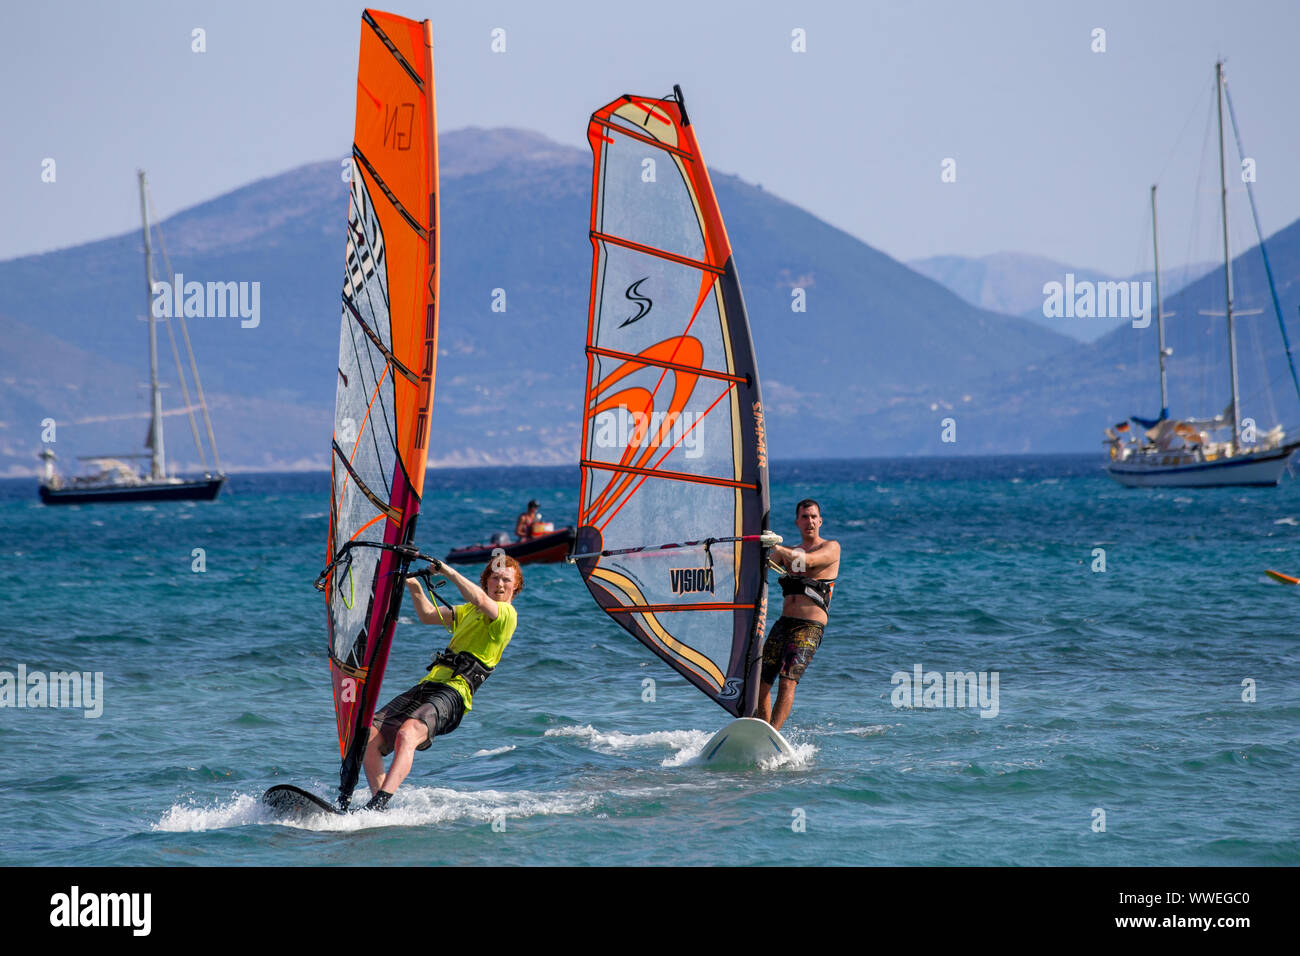 Learning to Windsurf at Vasiliki, Lefkada / Lefkas Island, Greece Stock Photo